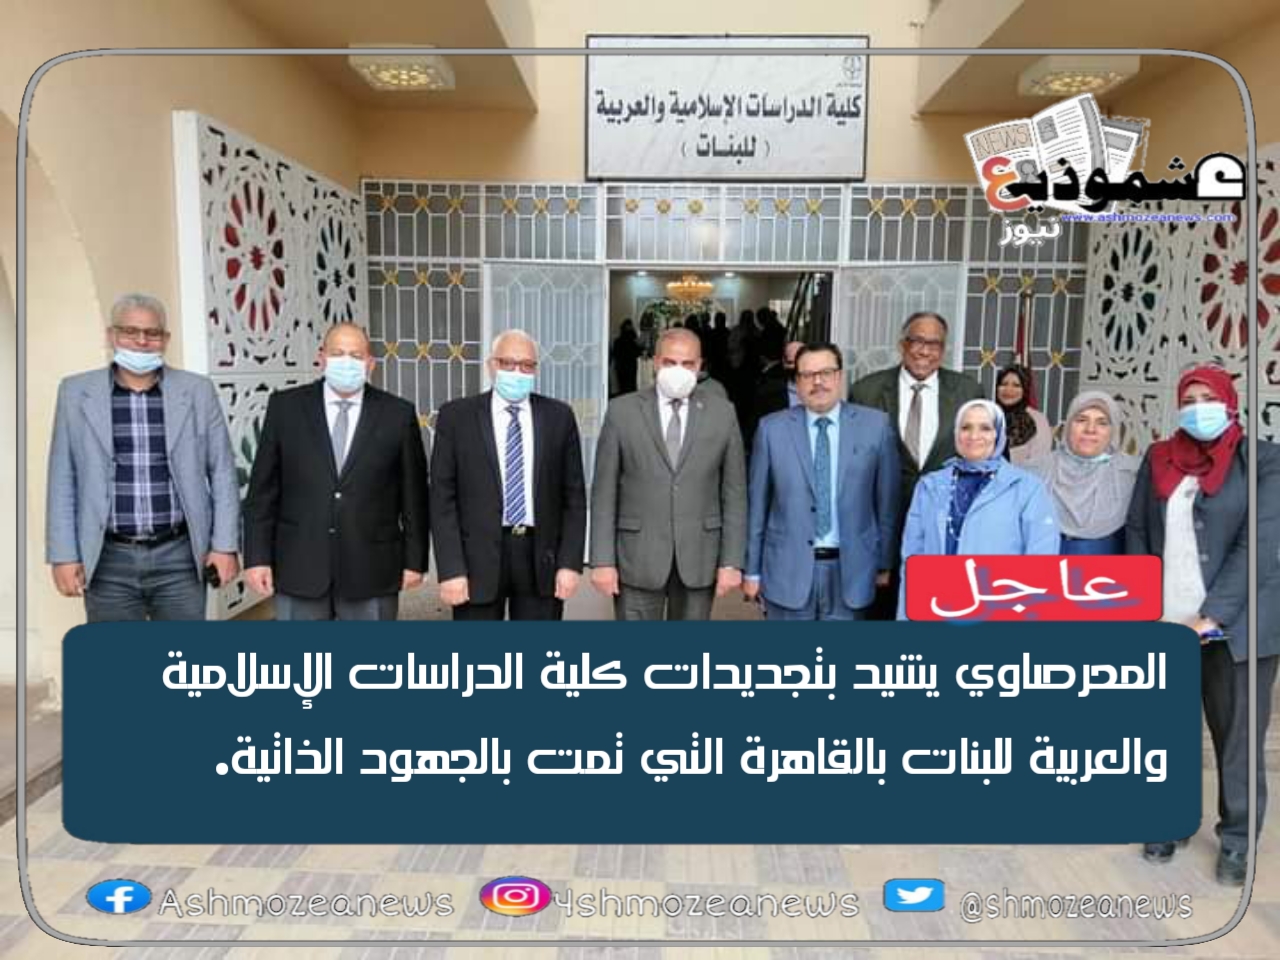 المحرصاوي يشيد بتجديدات كلية الدراسات الإسلامية والعربية للبنات بالقاهرة التي تمت بالجهود الذاتية.